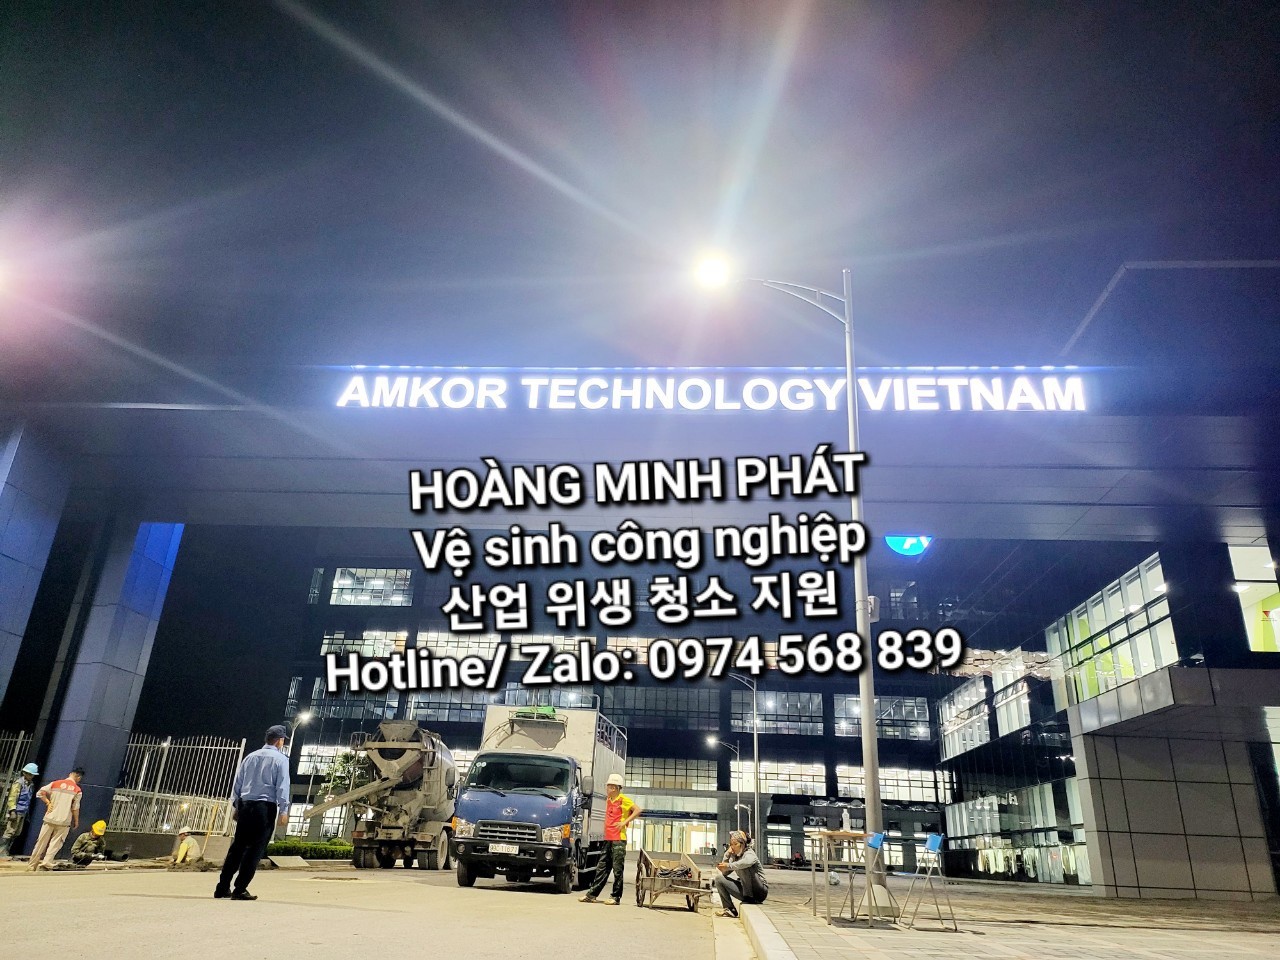 Nhà máy Amkor Technology Việt Nam